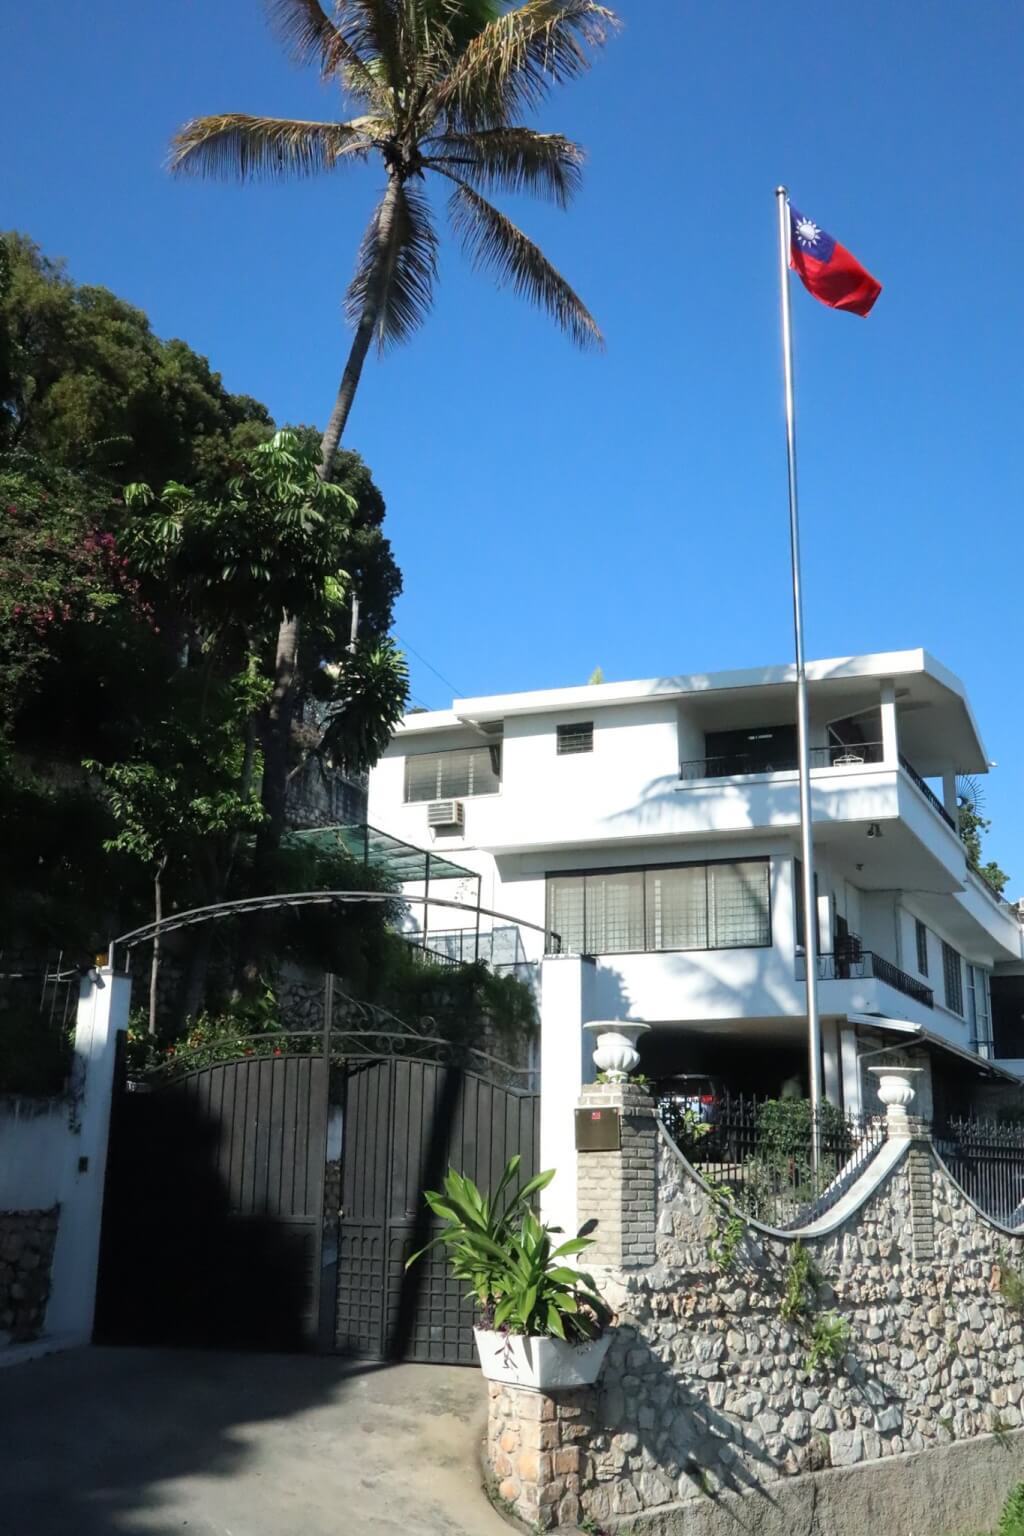 Les activités de l'ambassade de Taïwan en Haïti reprennent après un épisode de violences